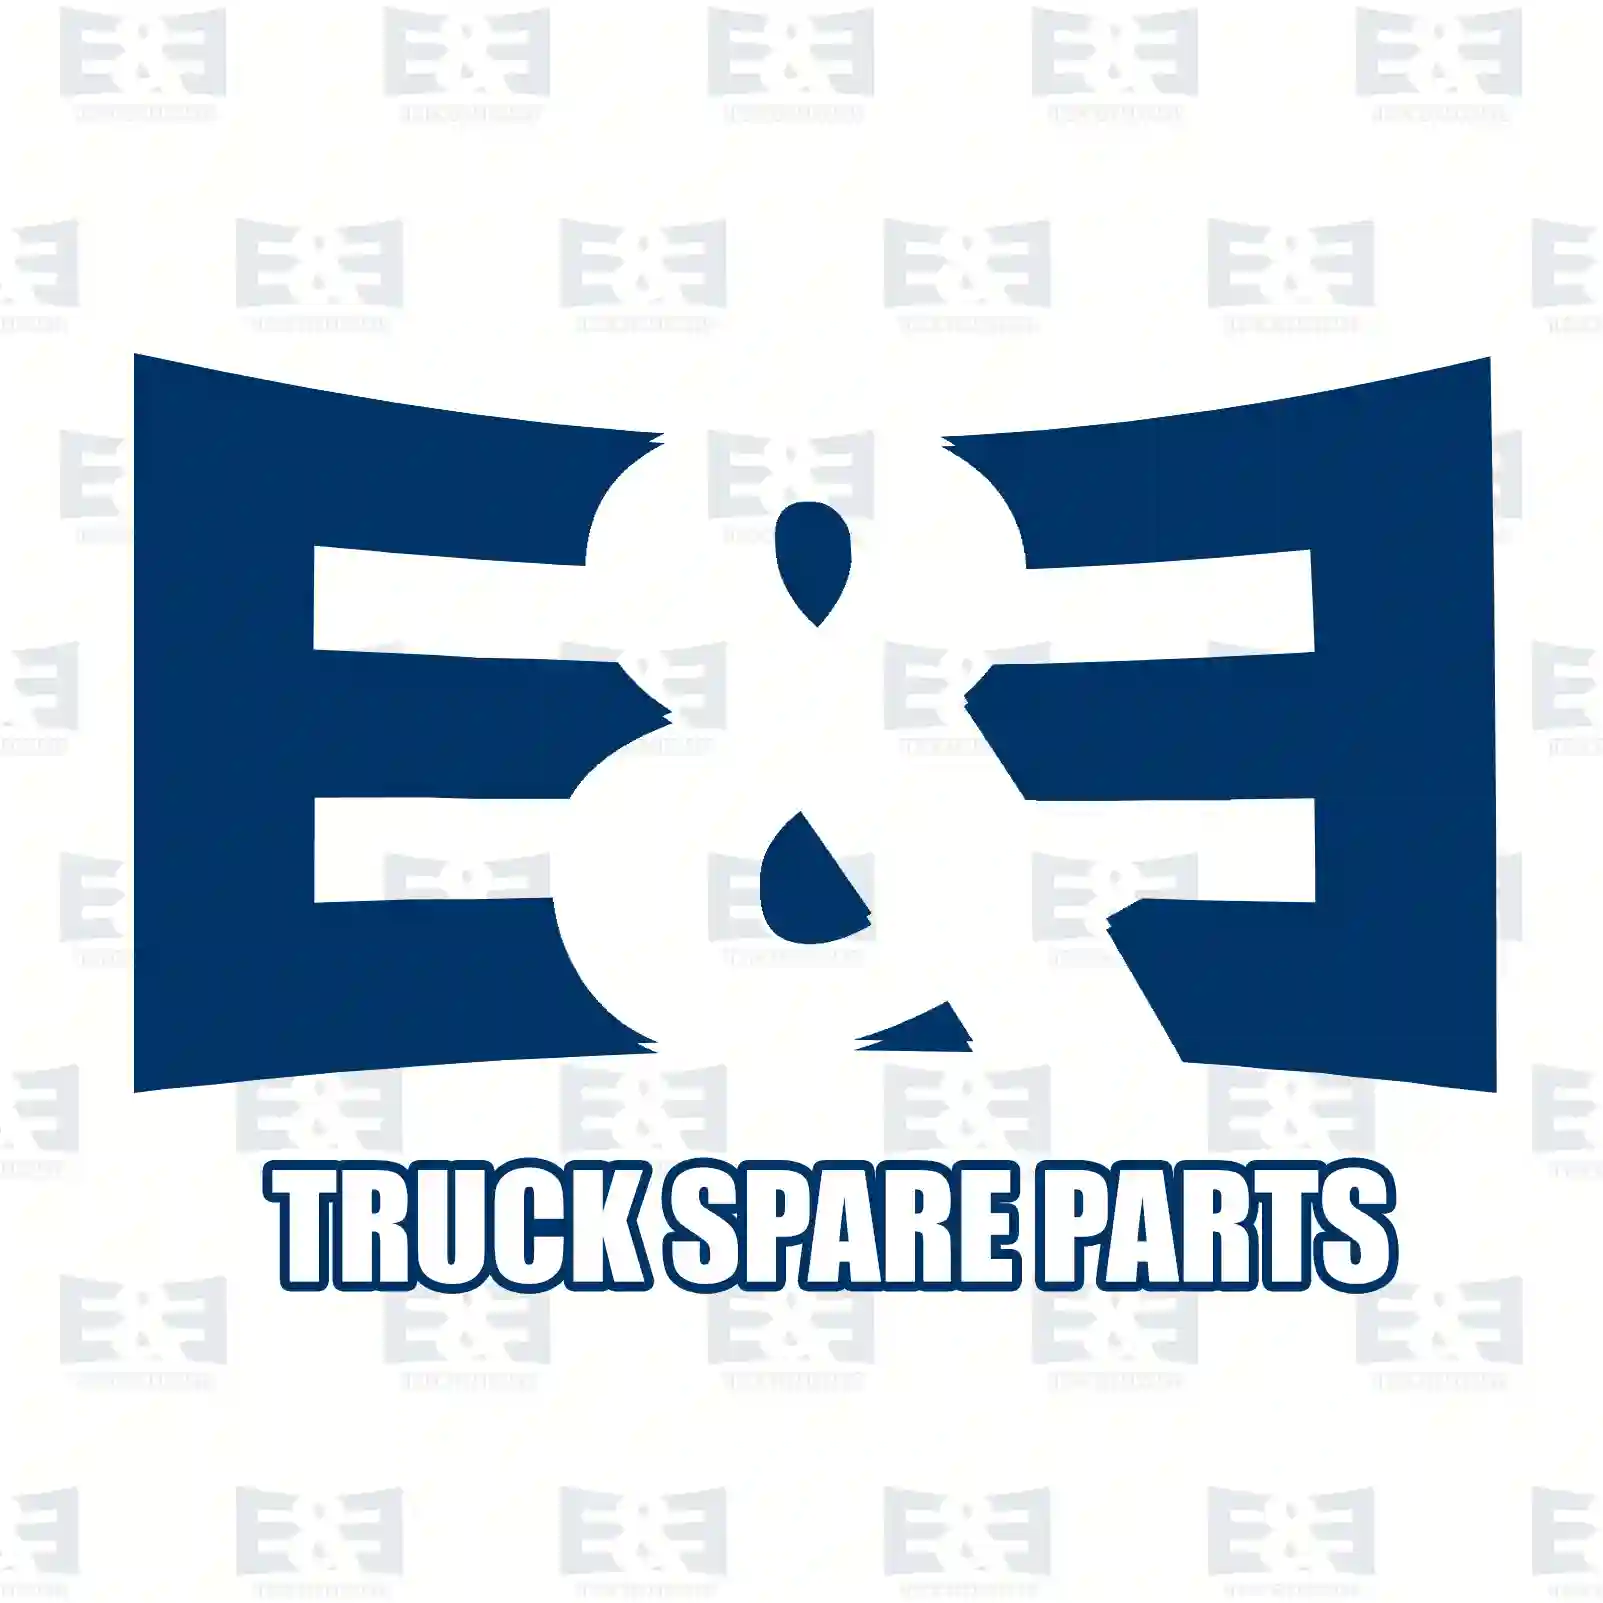 Fan clutch, 2E2202460, 2006787, 2046259, 2178413 ||  2E2202460 E&E Truck Spare Parts | Truck Spare Parts, Auotomotive Spare Parts Fan clutch, 2E2202460, 2006787, 2046259, 2178413 ||  2E2202460 E&E Truck Spare Parts | Truck Spare Parts, Auotomotive Spare Parts